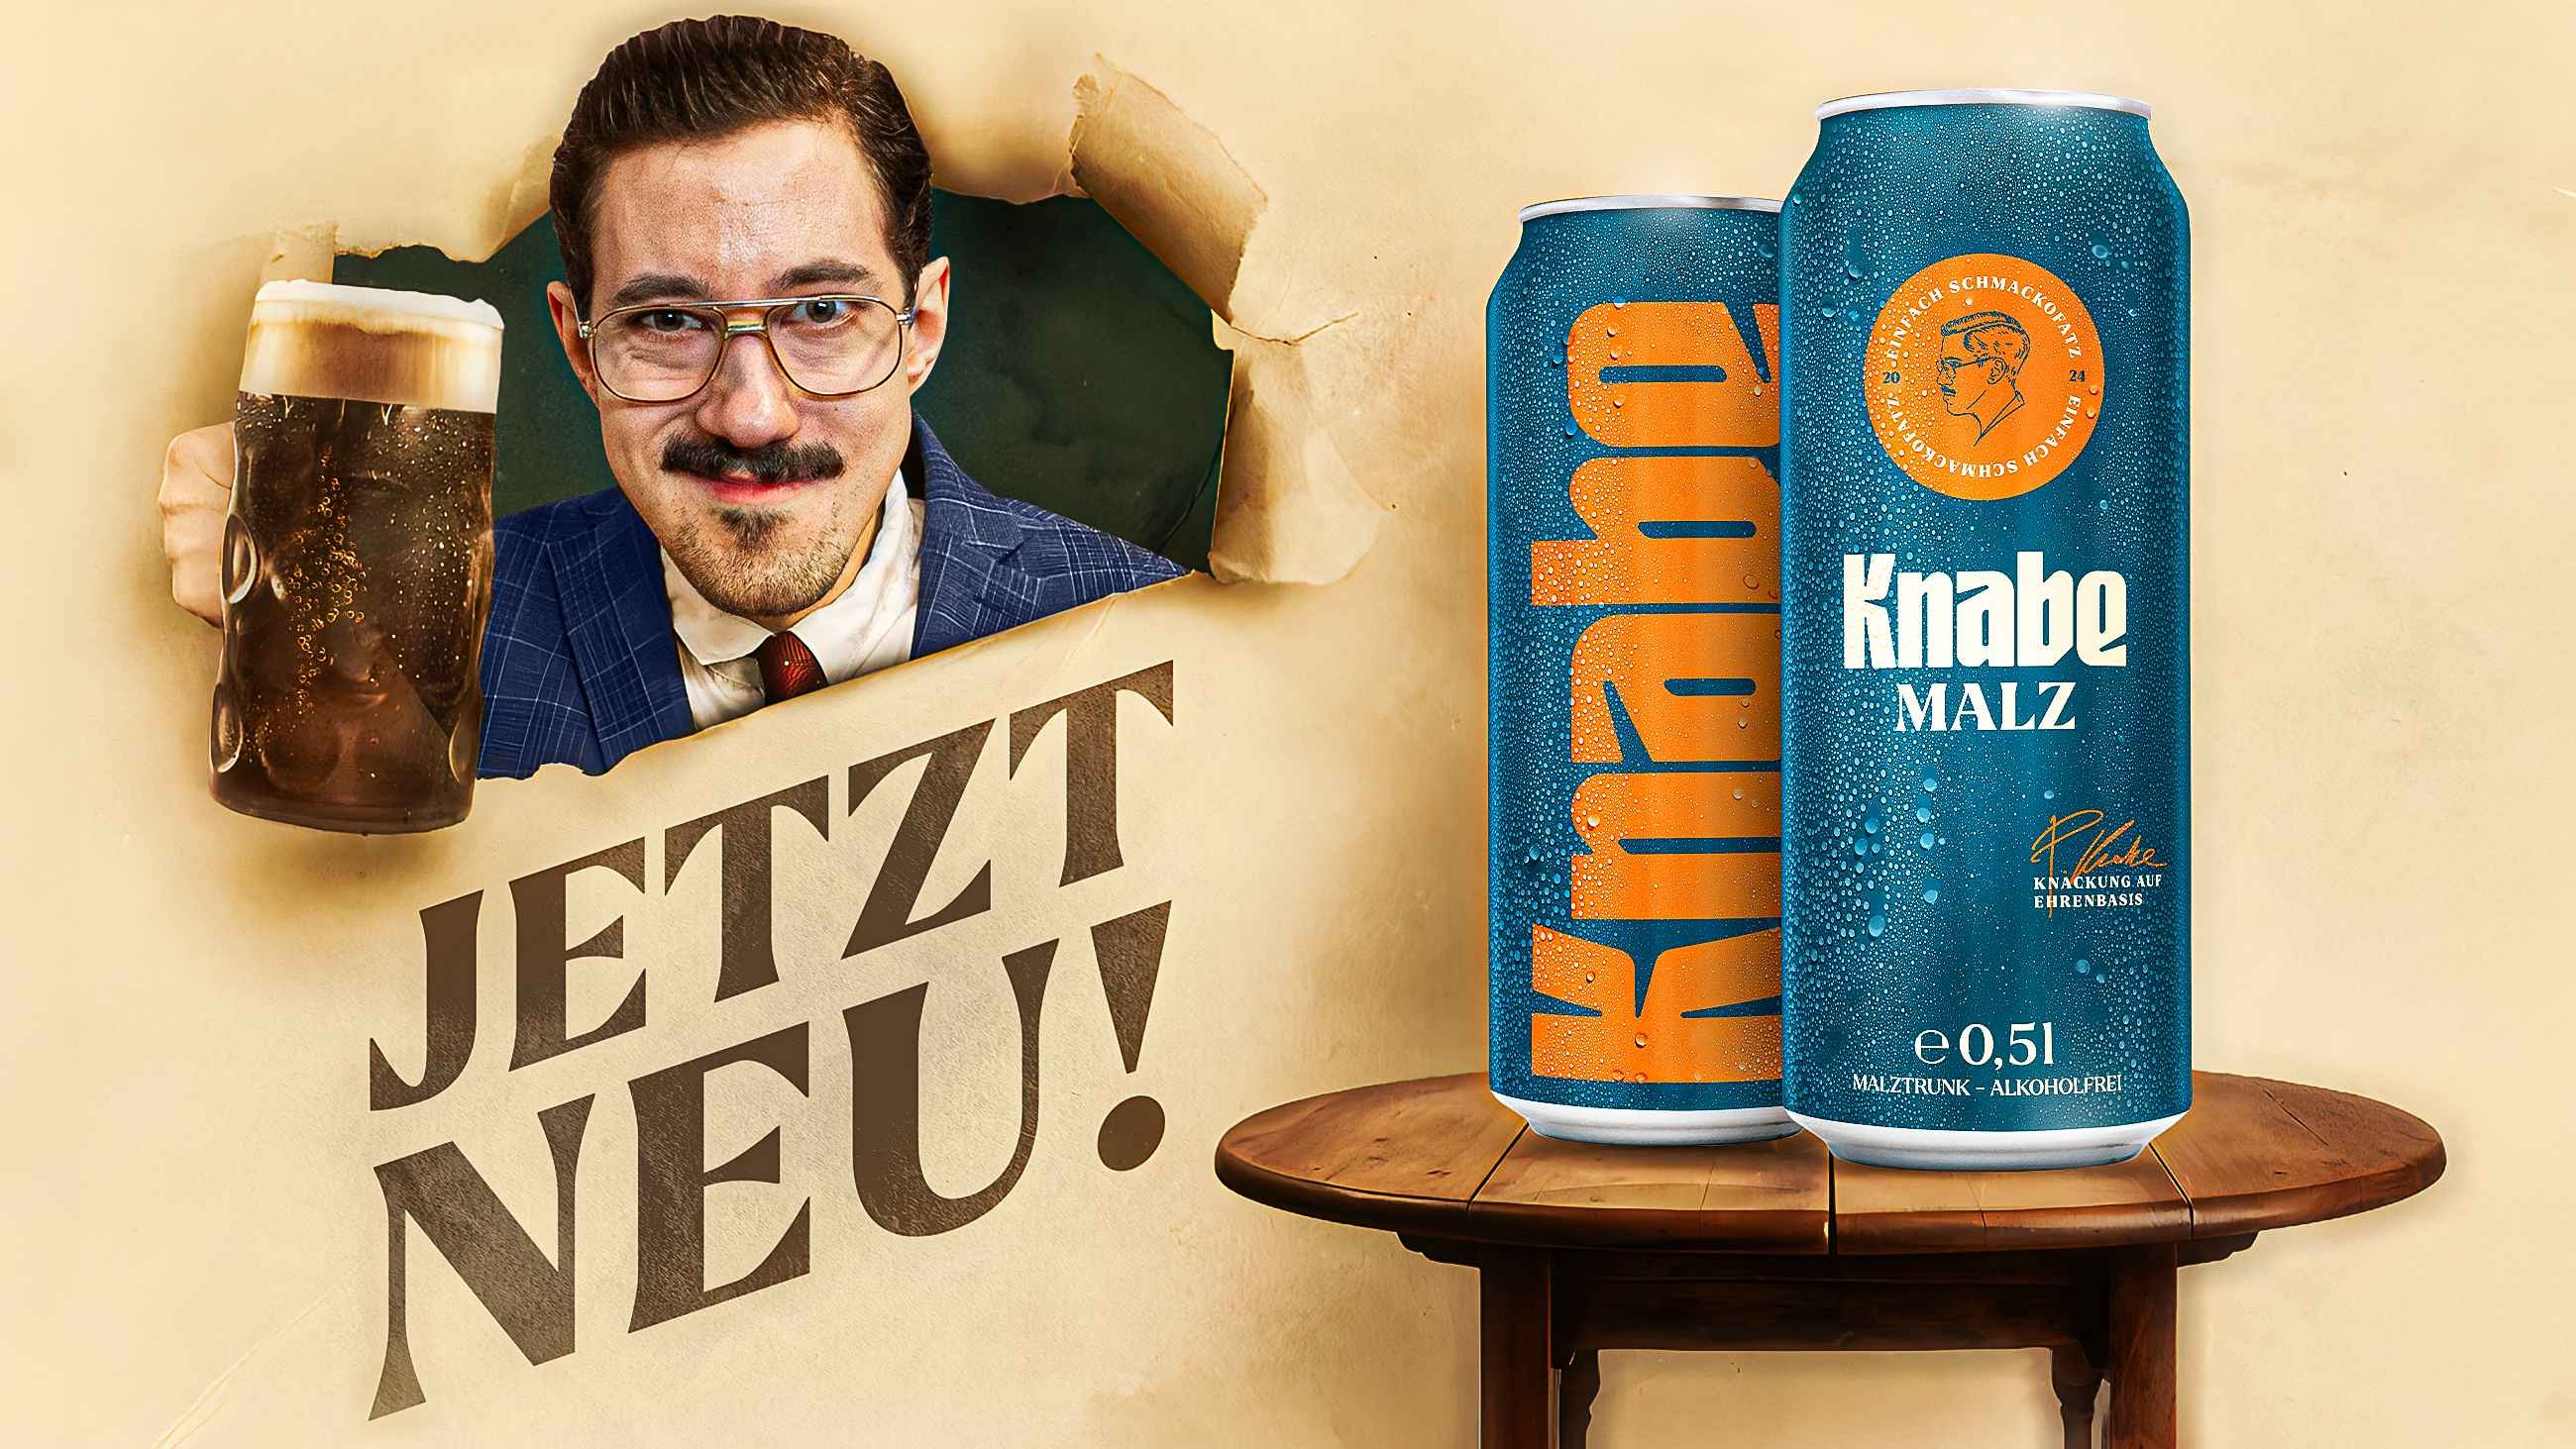 HandOfBlood und Krombacher starten Malztrunk-Marke "Knabe Malz"